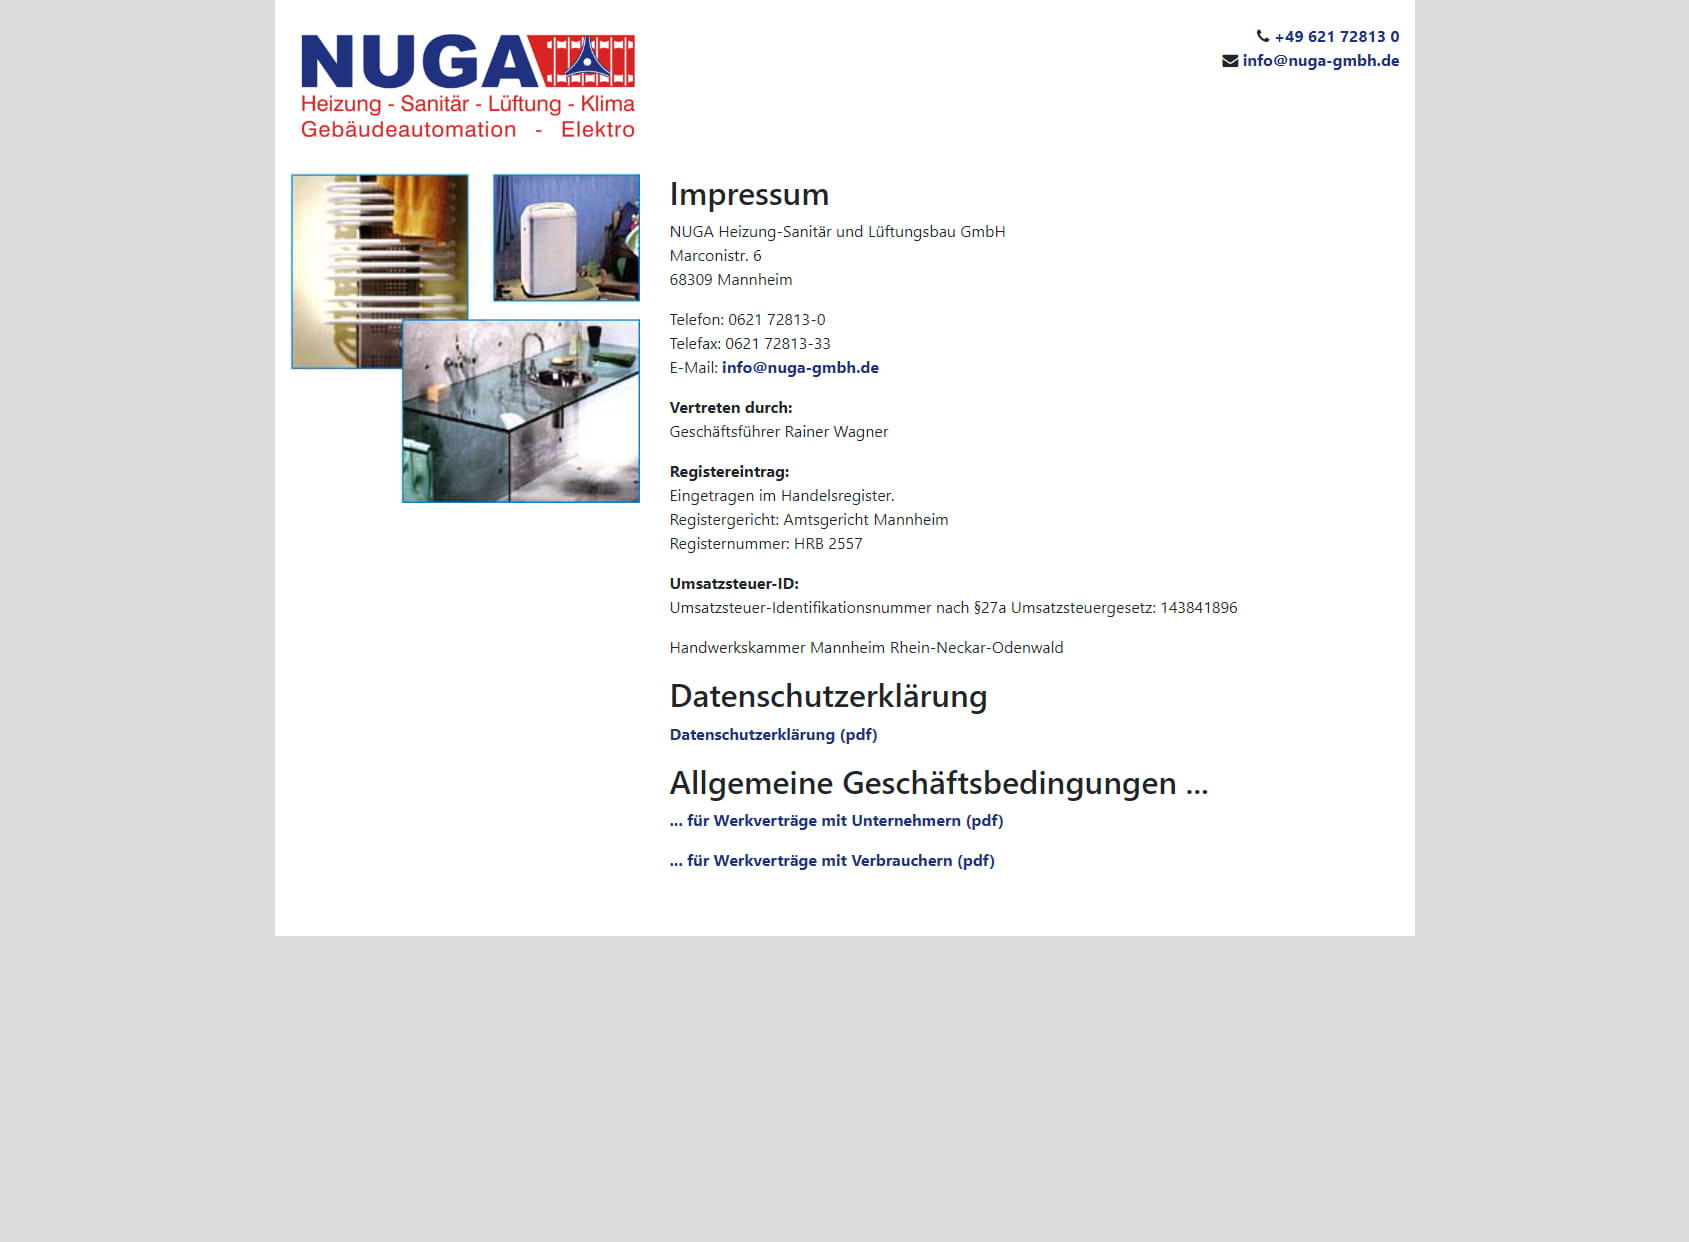 NUGA Heizung-, Sanitär- und Lüftungsbau GmbH